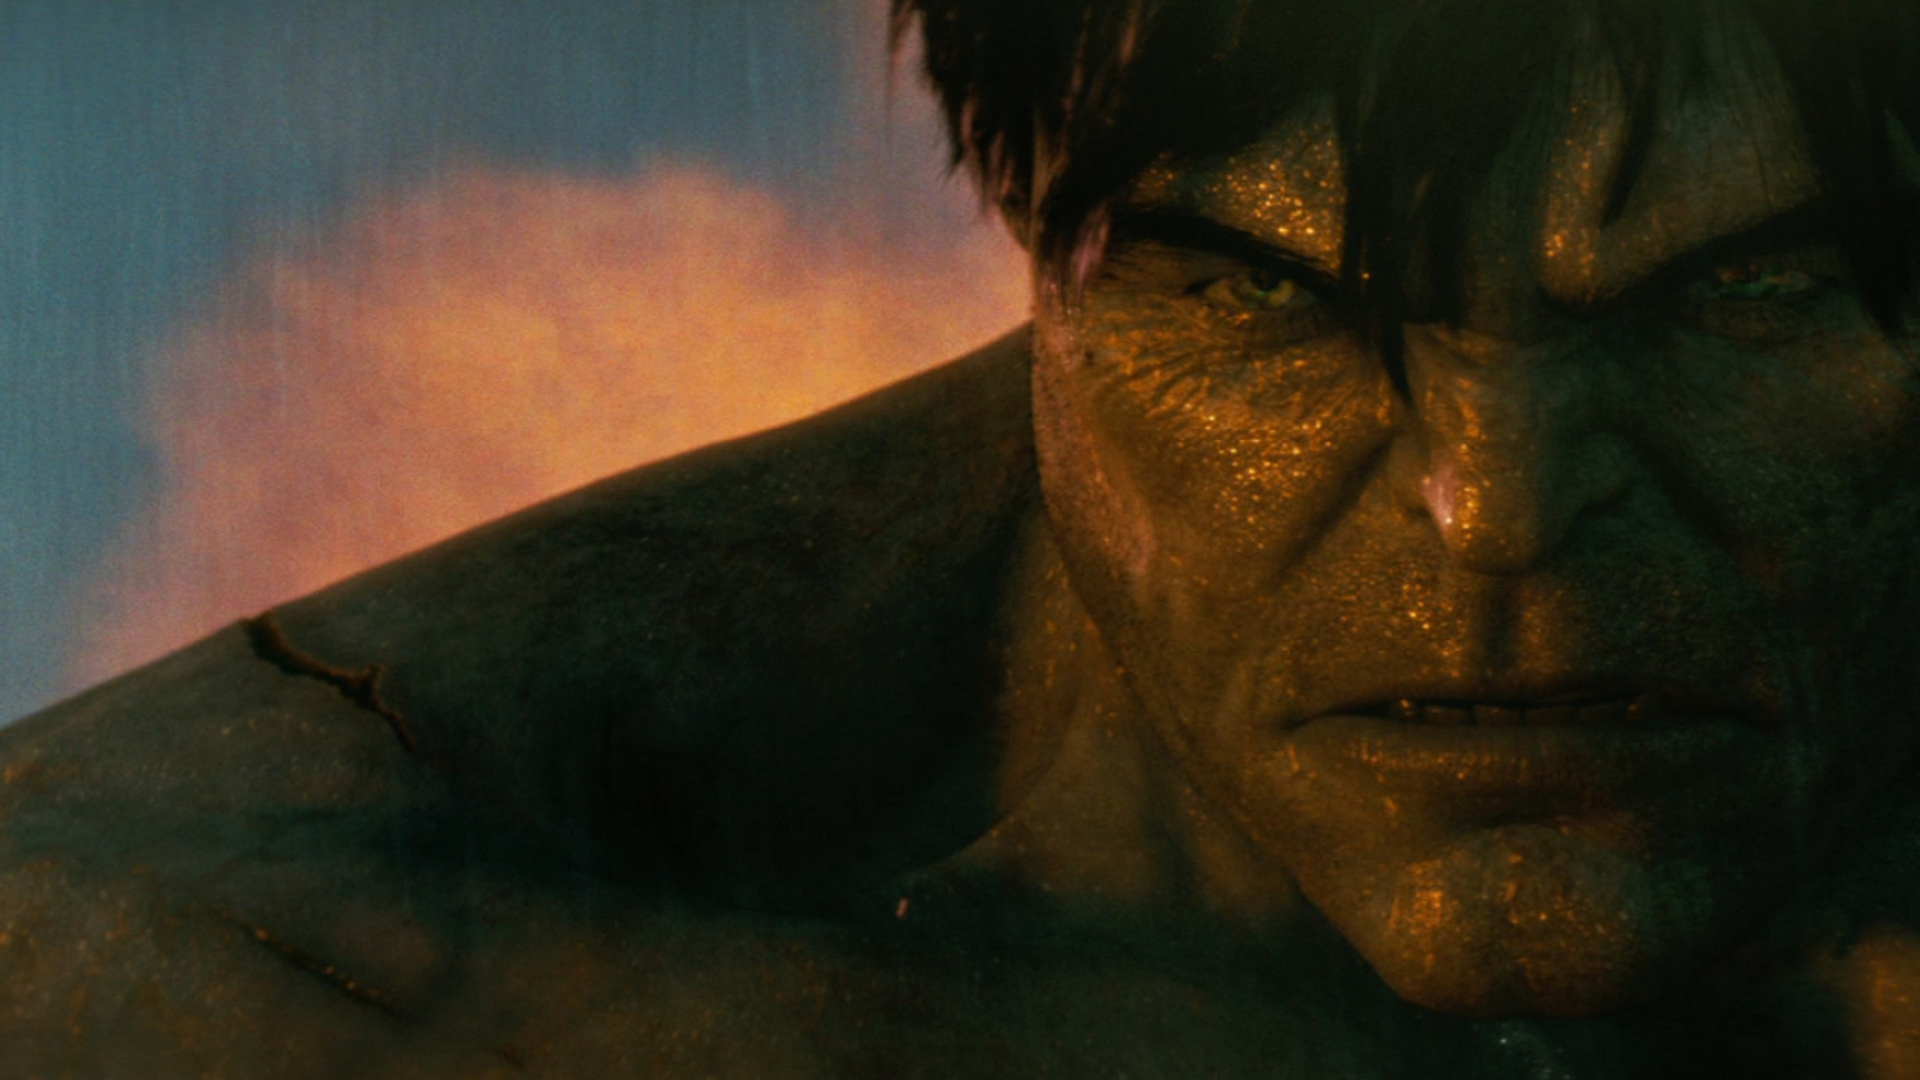 Hulk, Film review, The Incredible Hulk 2008, Critic's perspective, 1920x1080 Full HD Desktop